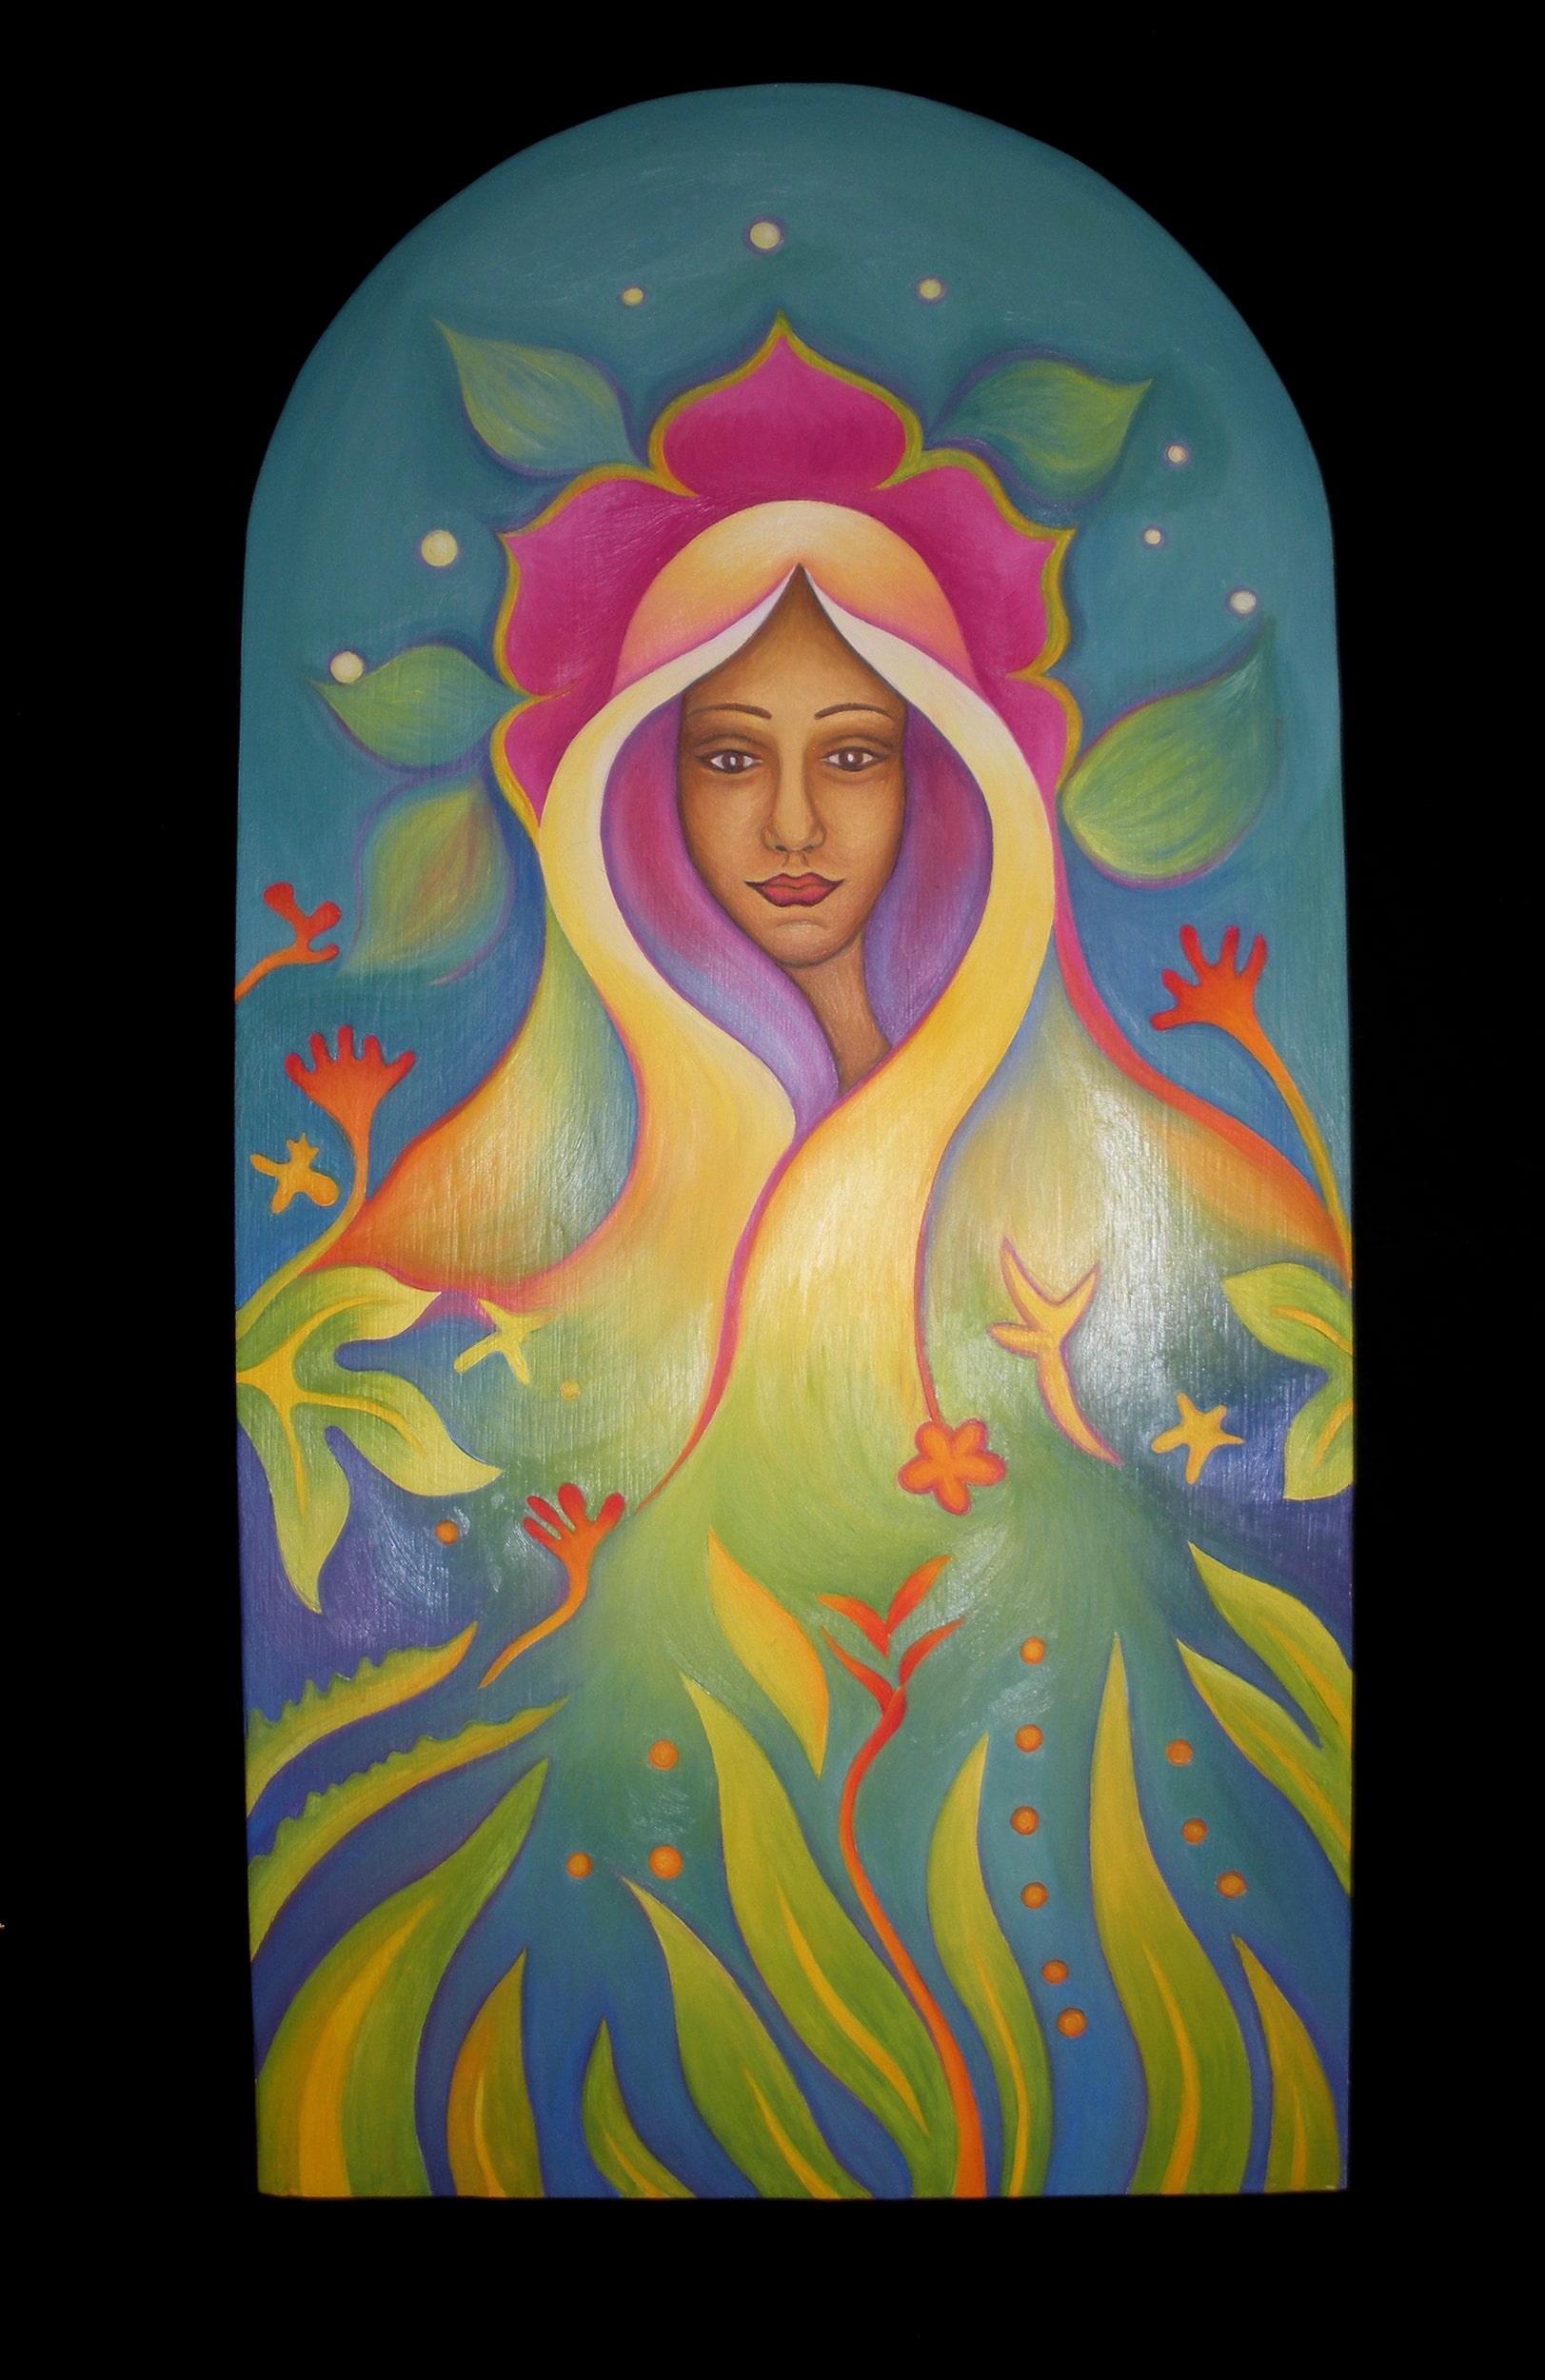 Sunrise Maiden: Oil on wooden panel